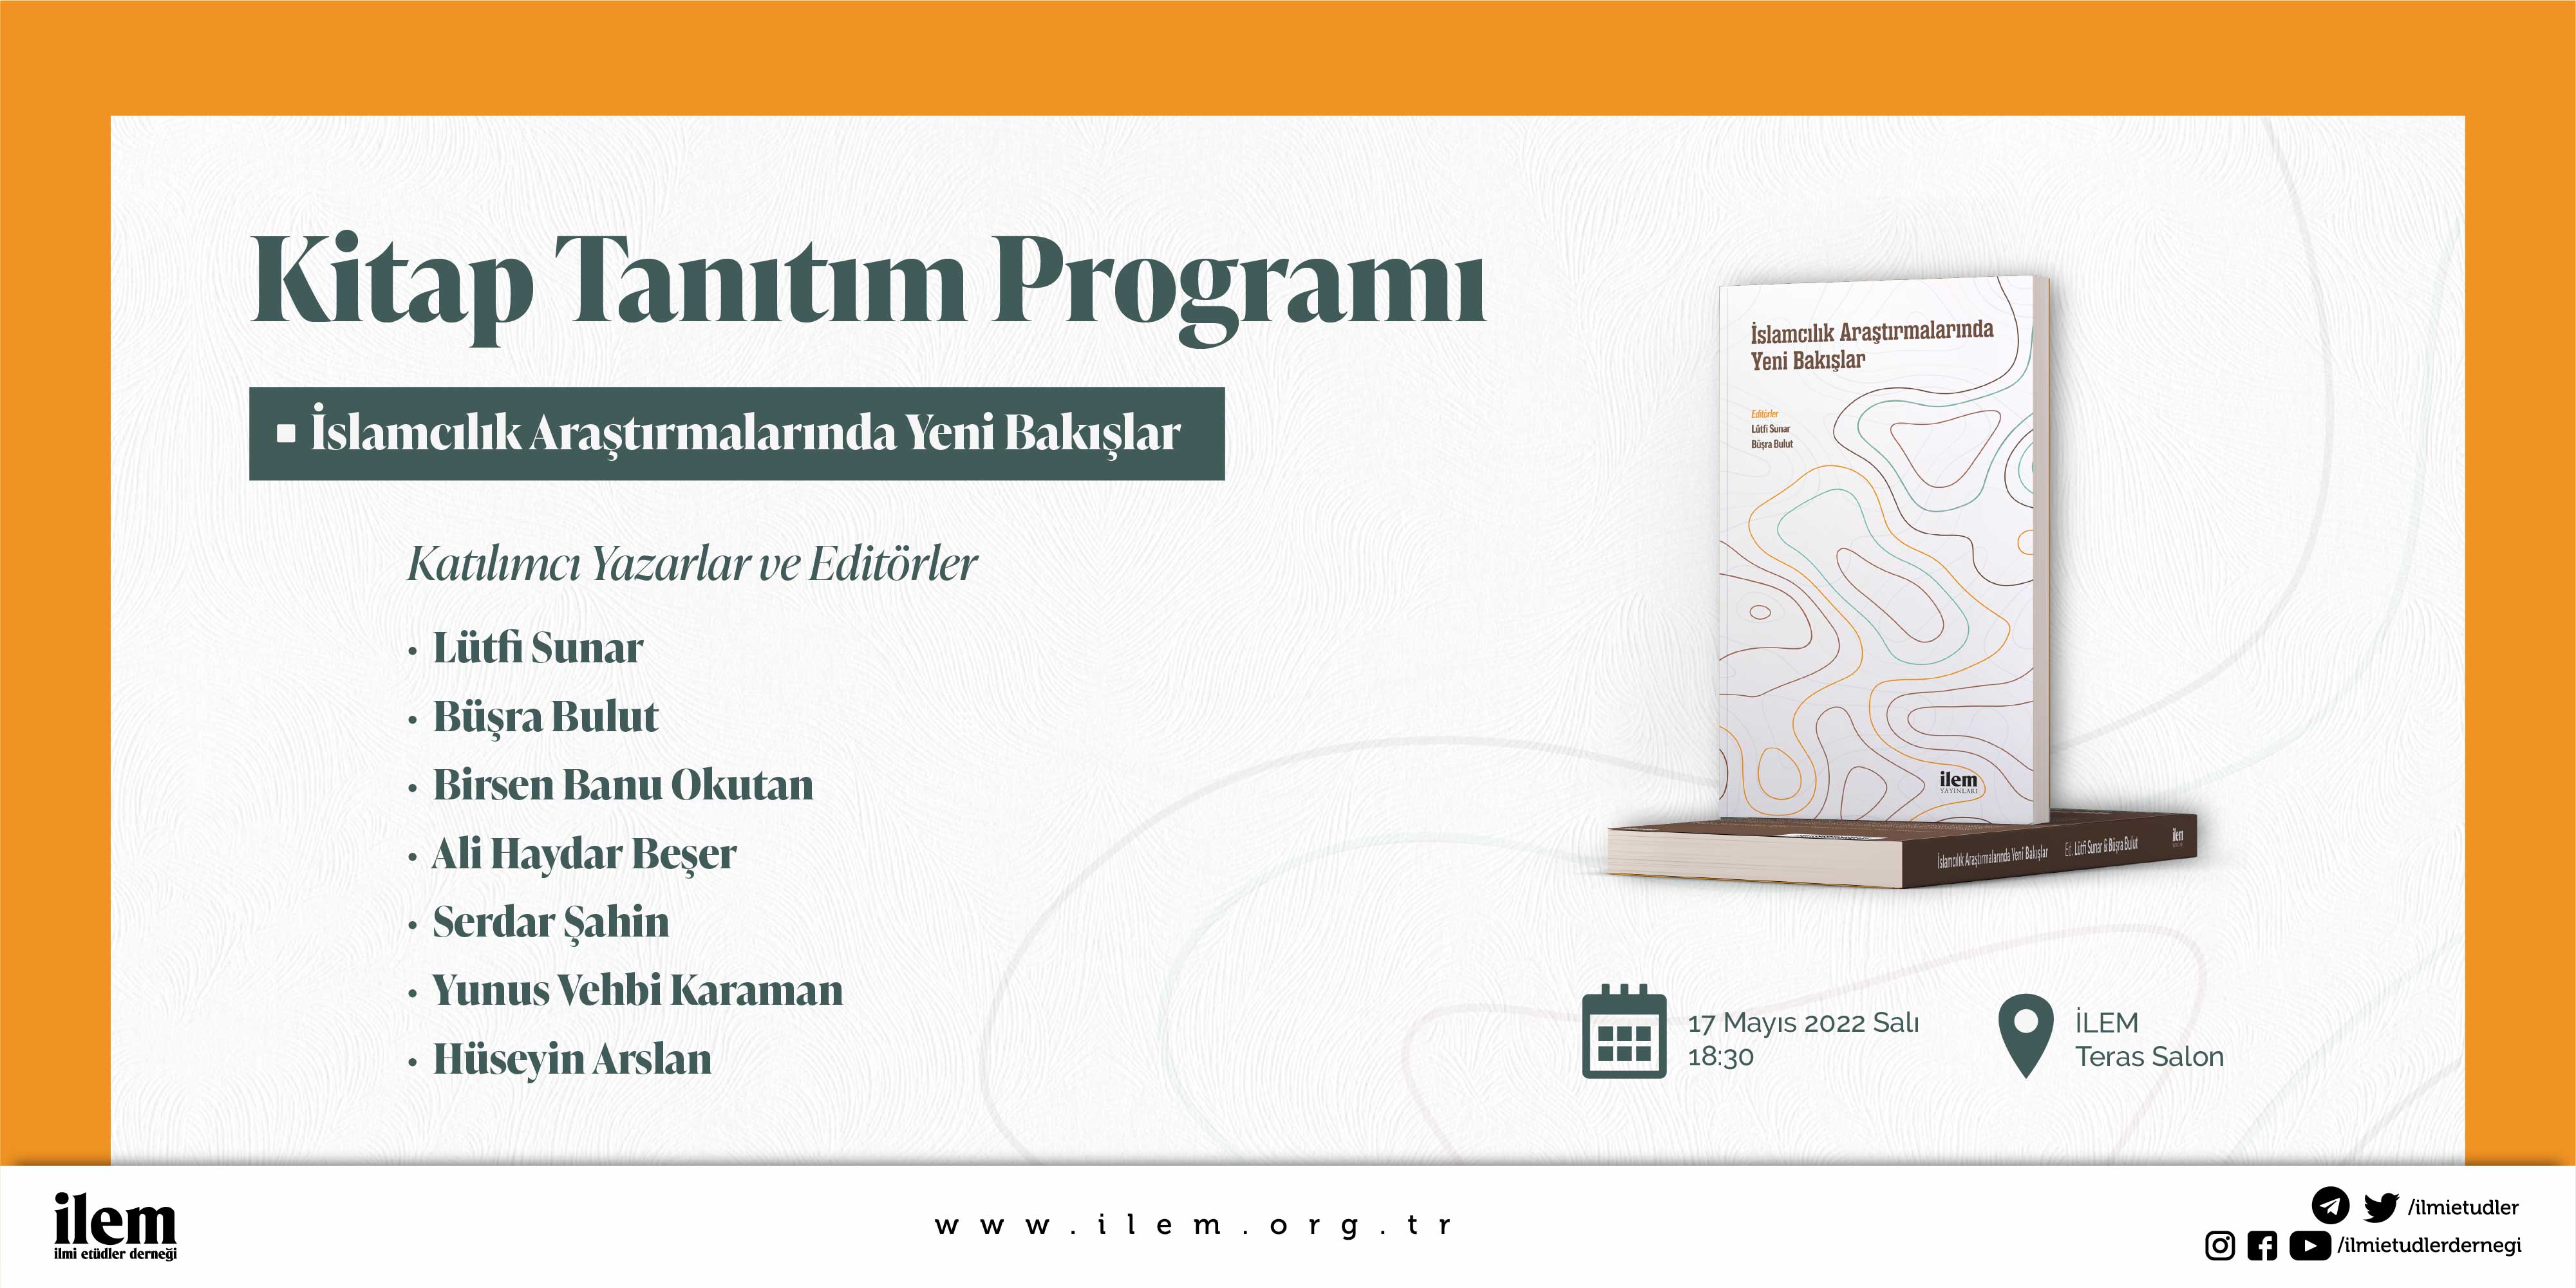 İslamcılık Araştırmalarında Yeni Bakışlar -Kitap Tanıtım Programı-